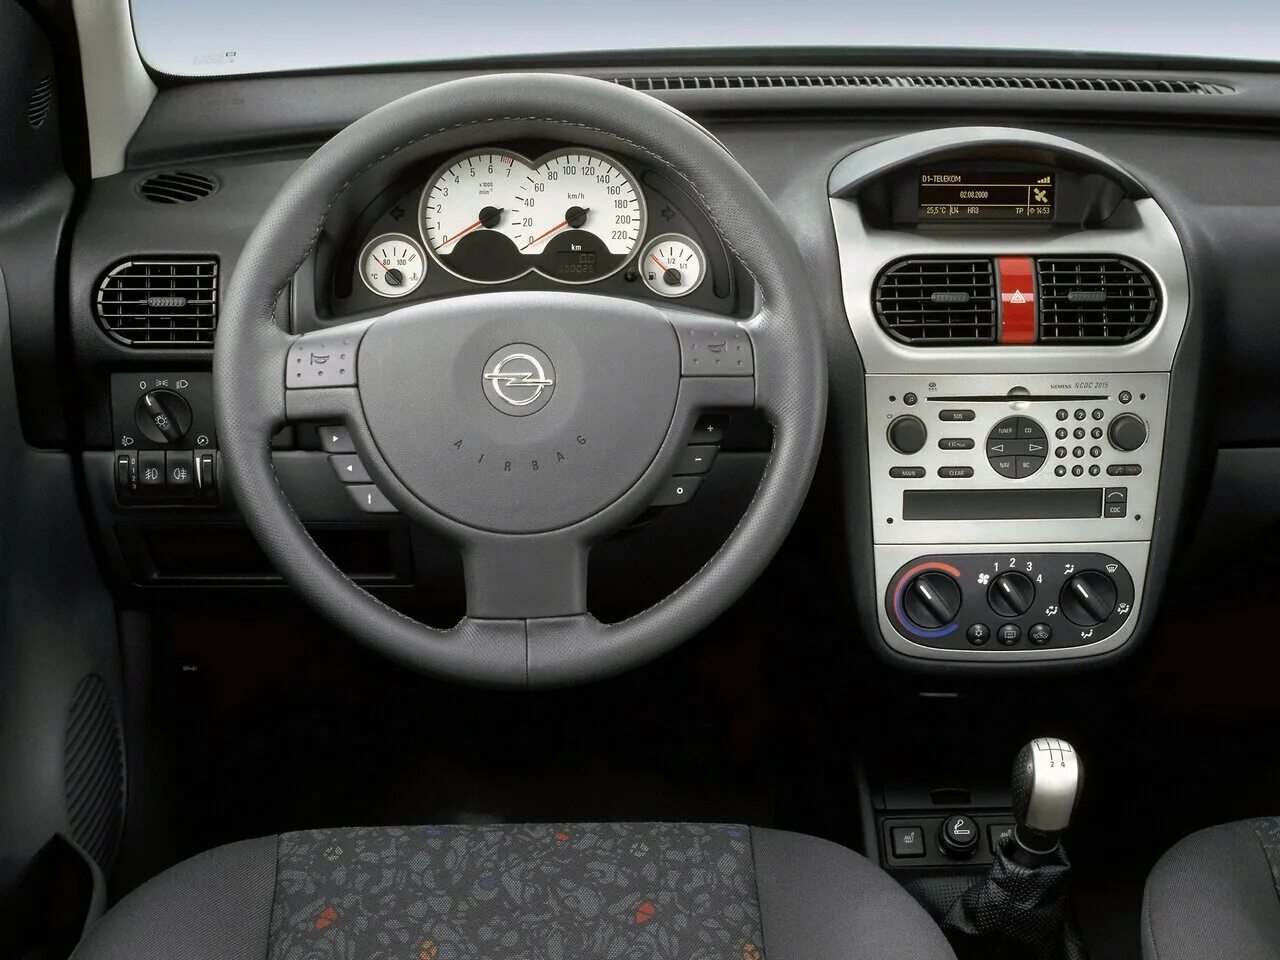 Opel Corsa c 2001. Combo c 2001 Opel. Opel Corsa c 2002. Opel Corsa c 2005 салон. Торпеда 2001